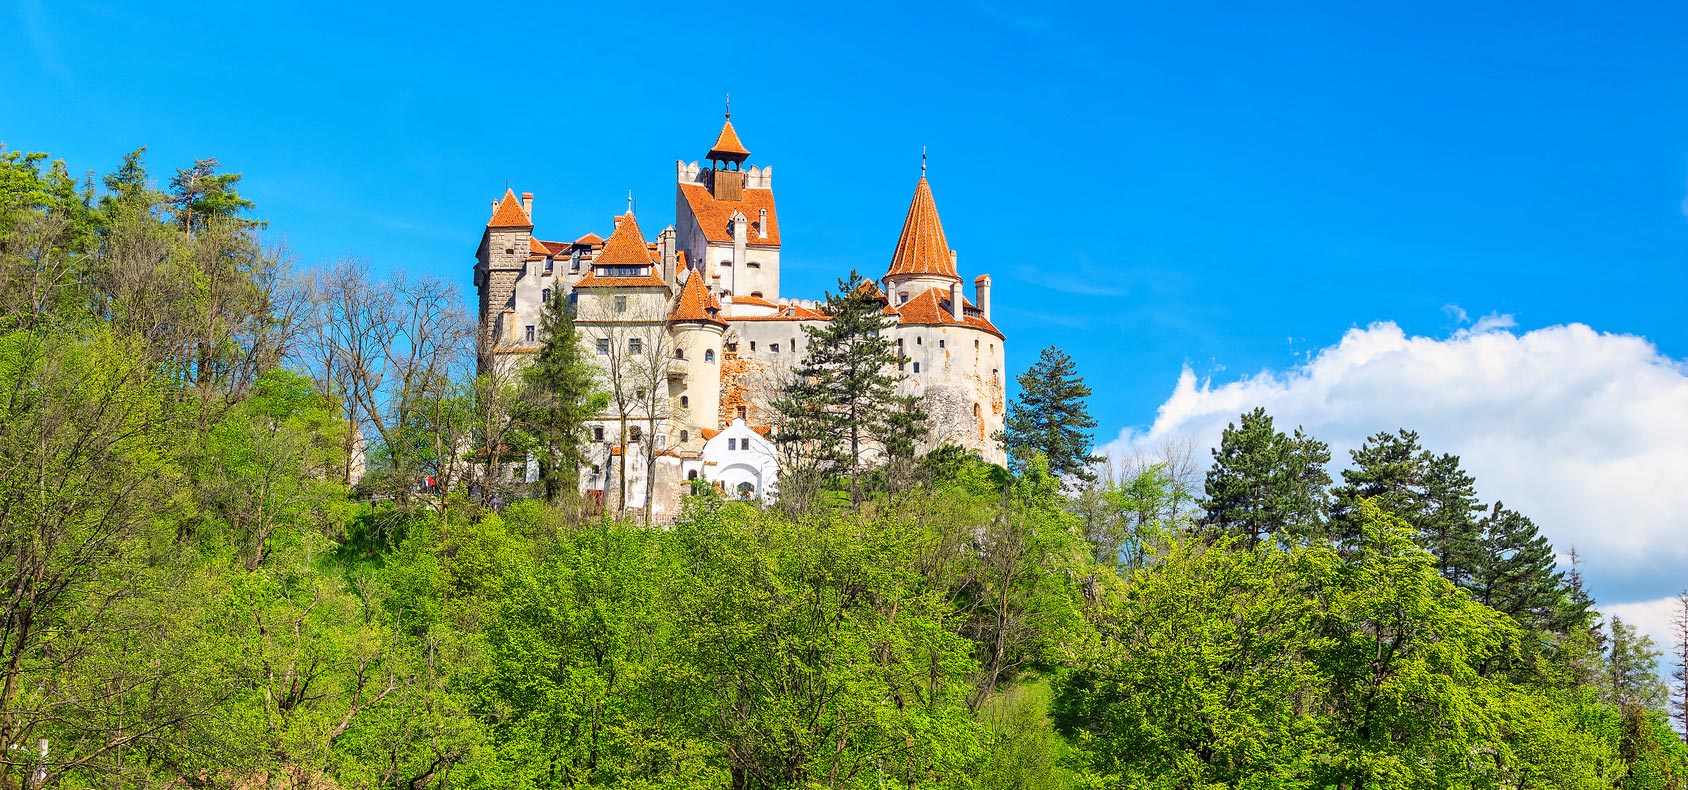 Rumänien - Schloss Bran, Transsilvanien